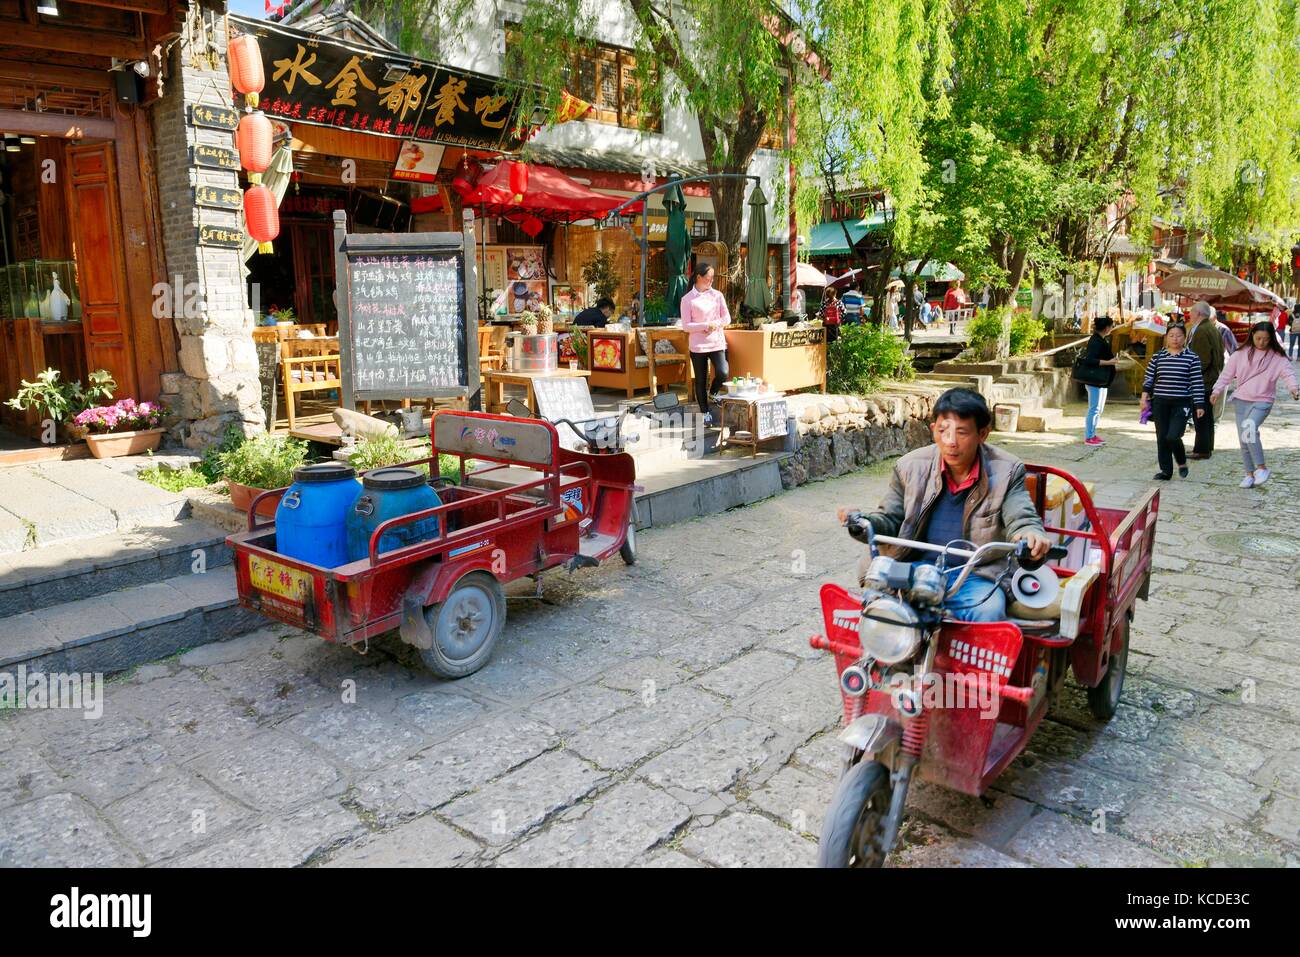 Shuhe Altstadt Weltkulturerbe, Provinz Yunnan, China. naxi ethnischen Menschen antike Stätte in Lijiang. Tee Zimmer und Souvenirläden street scene Stockfoto